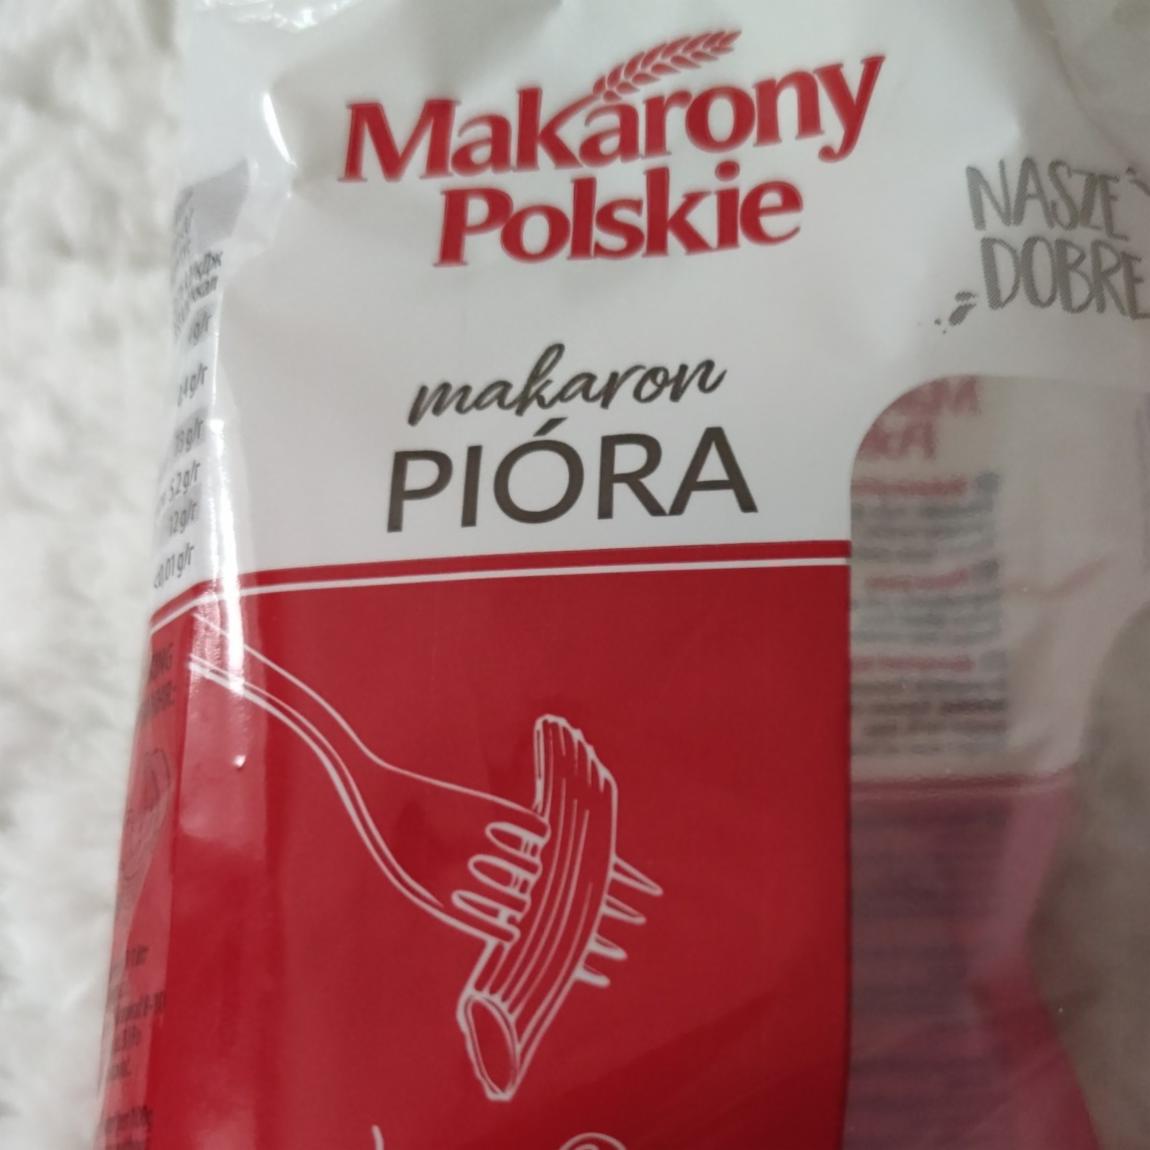 Fotografie - Makarony Polskie makaron Pióra